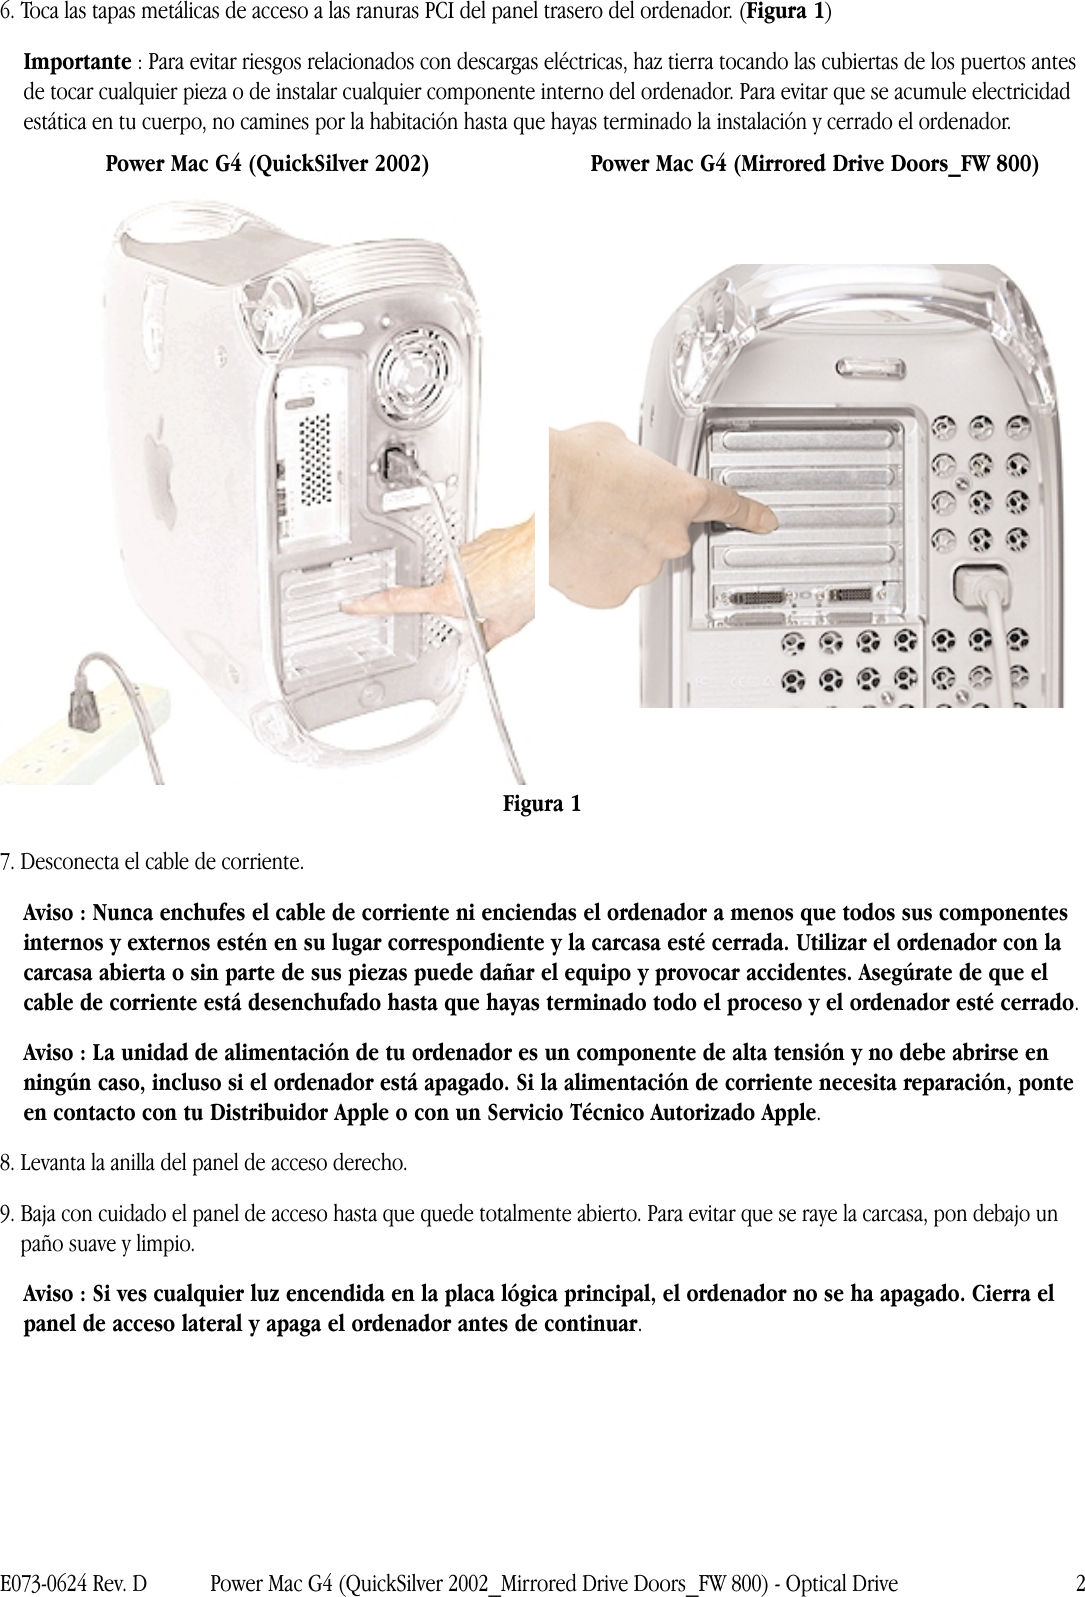 Page 2 of 10 - Apple Power Mac G4 (QuickSilver 2002) Optical Drive User Manual Y Macintosh Server - Unidad óptica Instrucciones Para La Sustitución G4mdd-fw800-opdrv